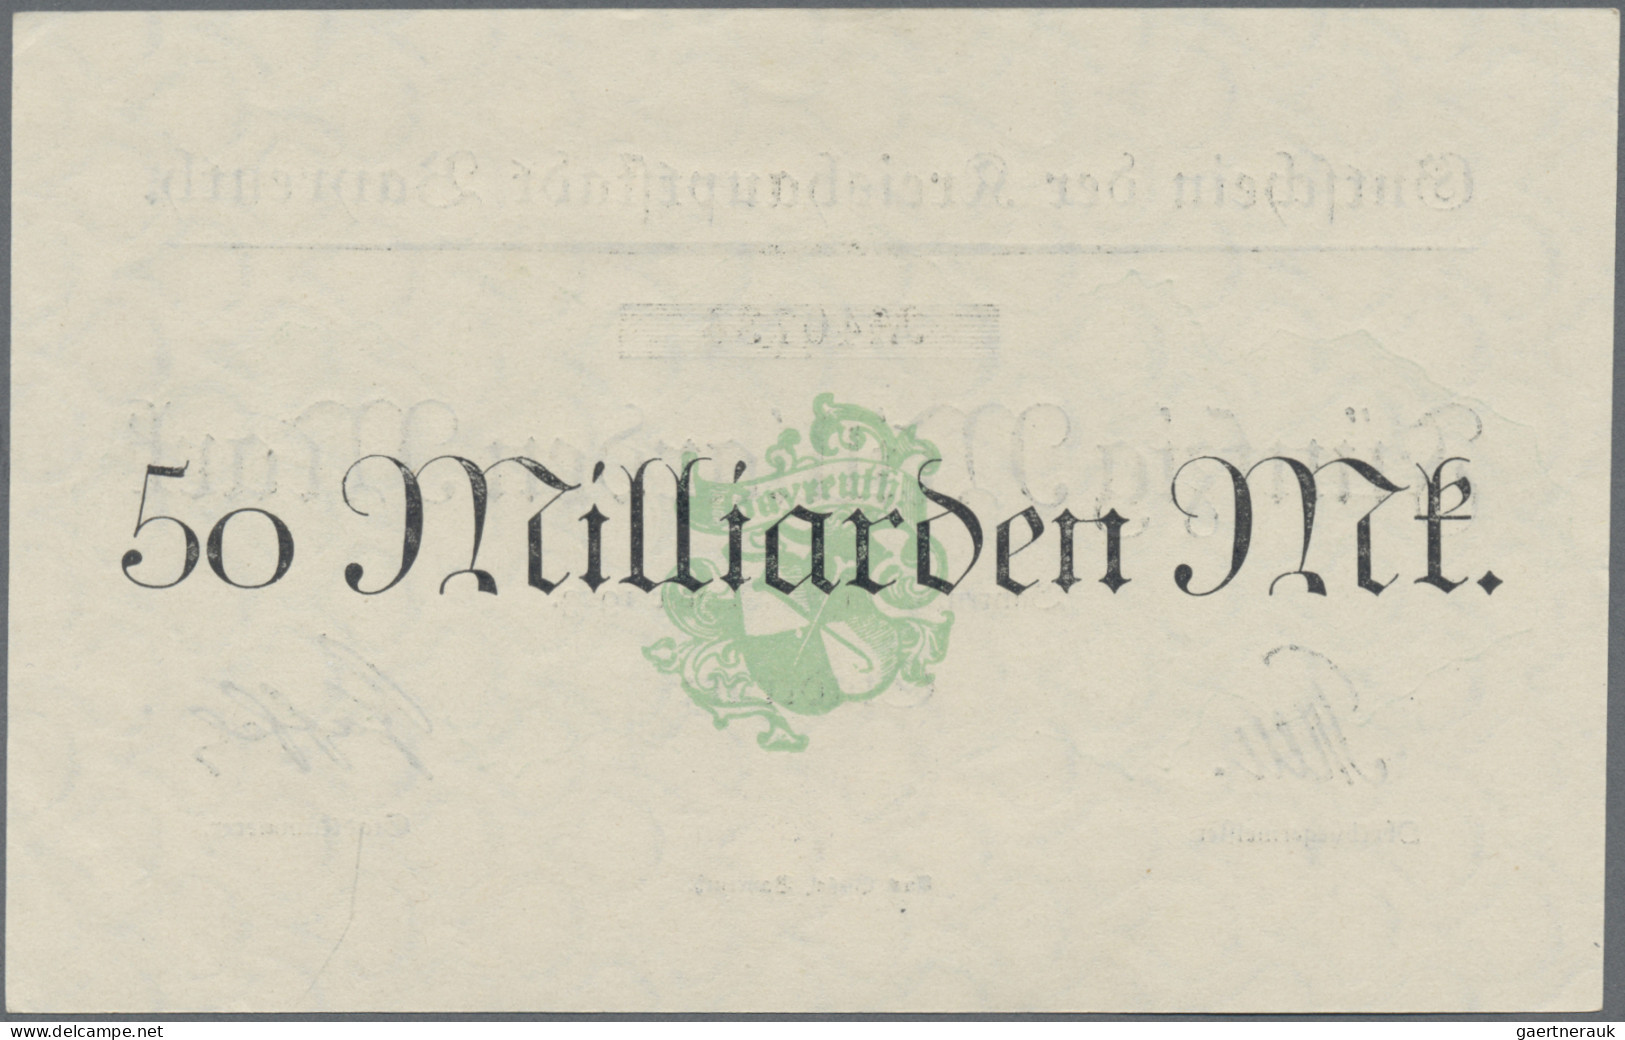 Deutschland - Notgeld - Bayern: Bayreuth, Stadt, 1 Mio. Mark, 17.8.1923, Erh. II